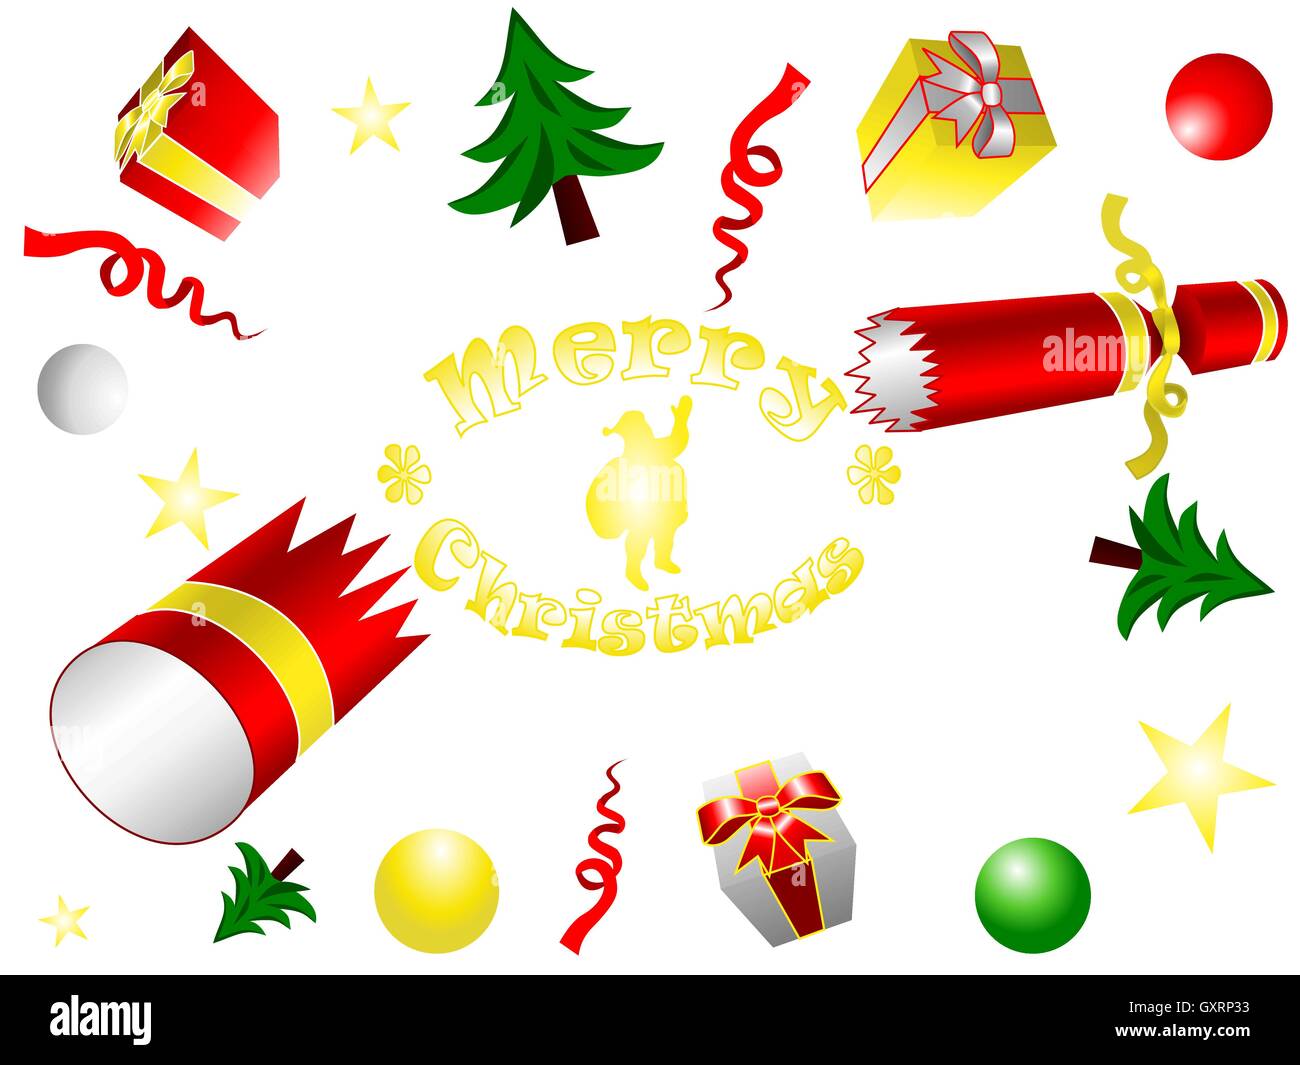 Platzen Sie, Cracker, Bonbon, Geschenkboxen, Kugeln, Sterne, Weihnachtsbäume und Band fliegen mit Text Frohe Weihnachten und der Weihnachtsmann Stock Vektor